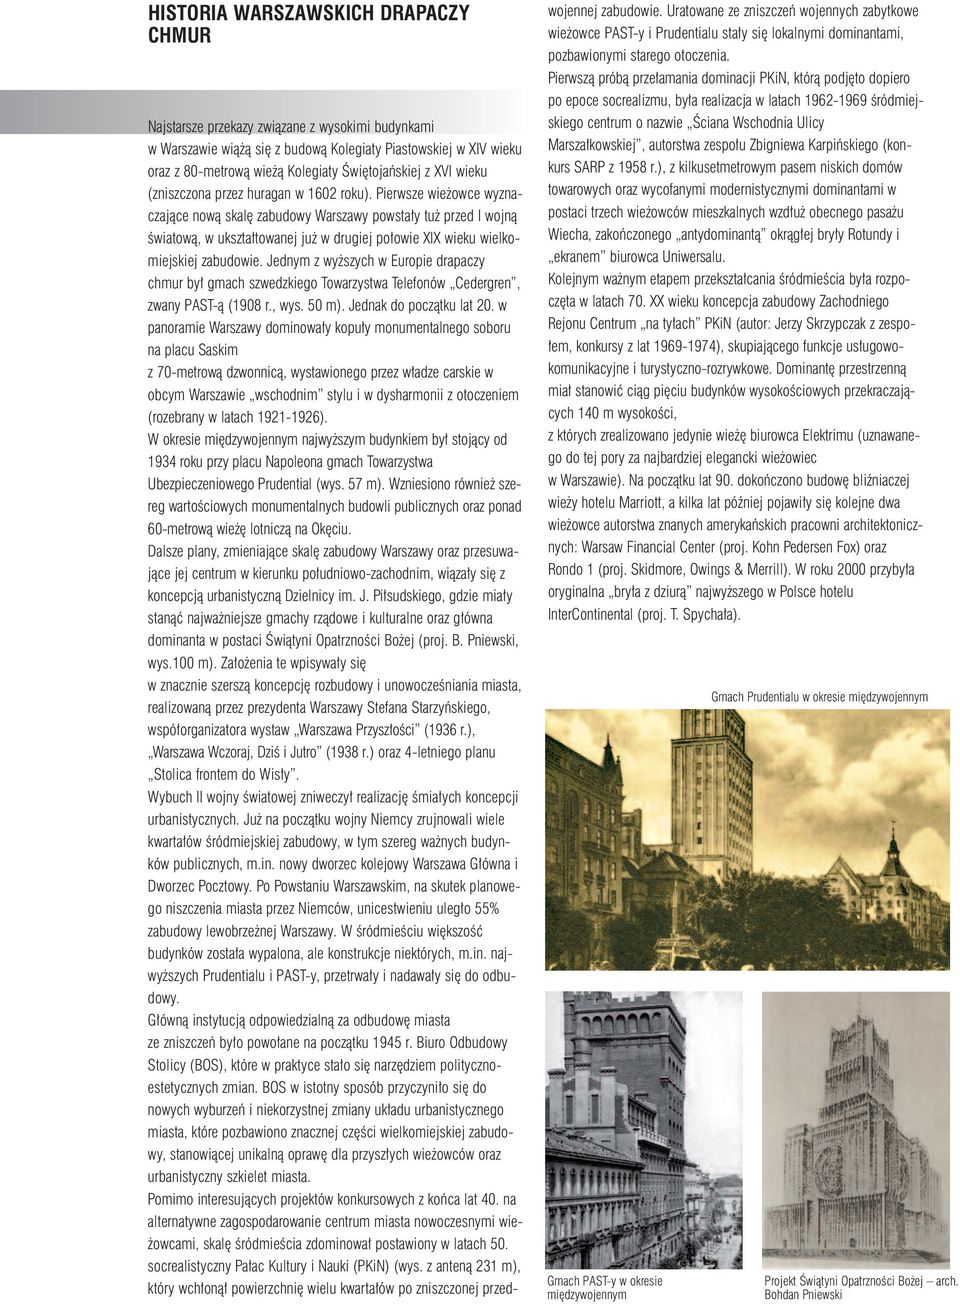 Pierwsze wieżowce wyznaczające nową skalę zabudowy Warszawy powstały tuż przed I wojną światową, w ukształtowanej już w drugiej połowie XIX wieku wielkomiejskiej zabudowie.